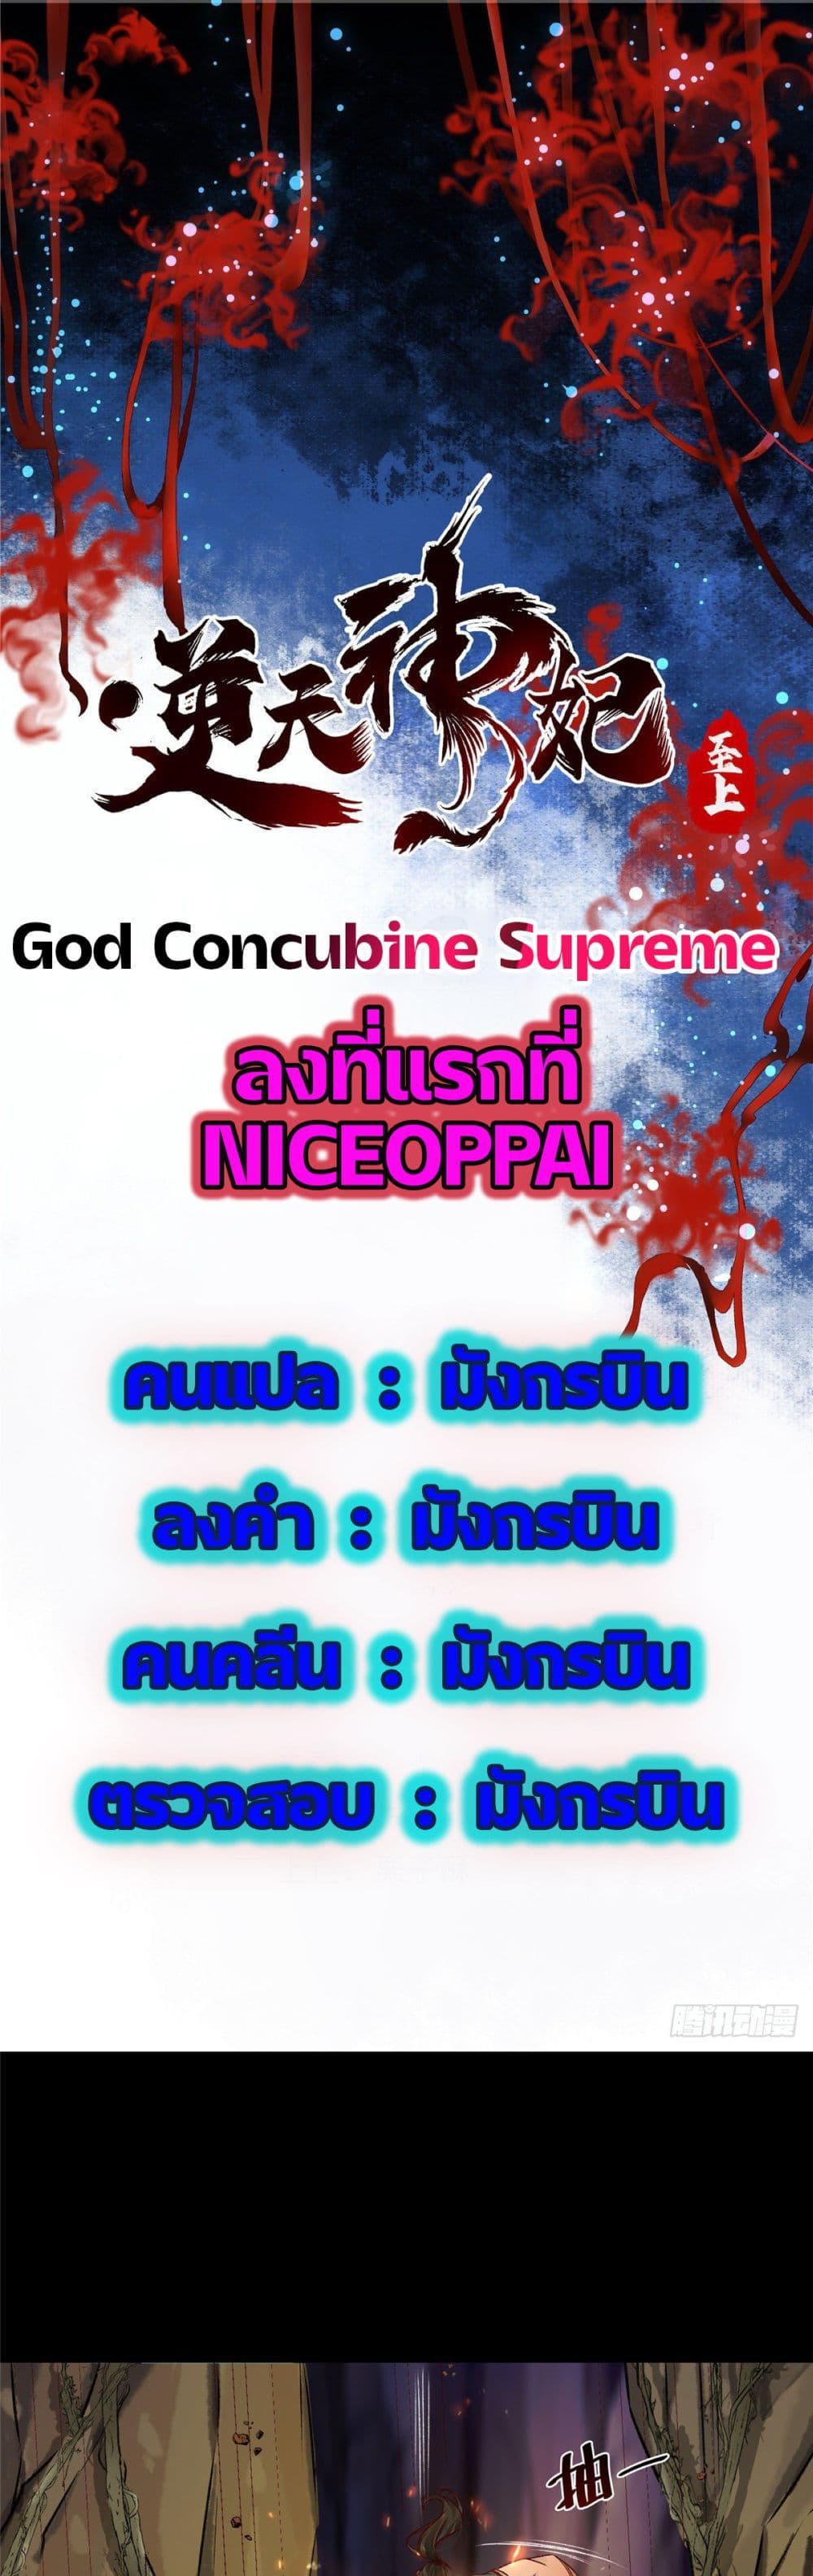 God Concubine Supreme 6 (1)